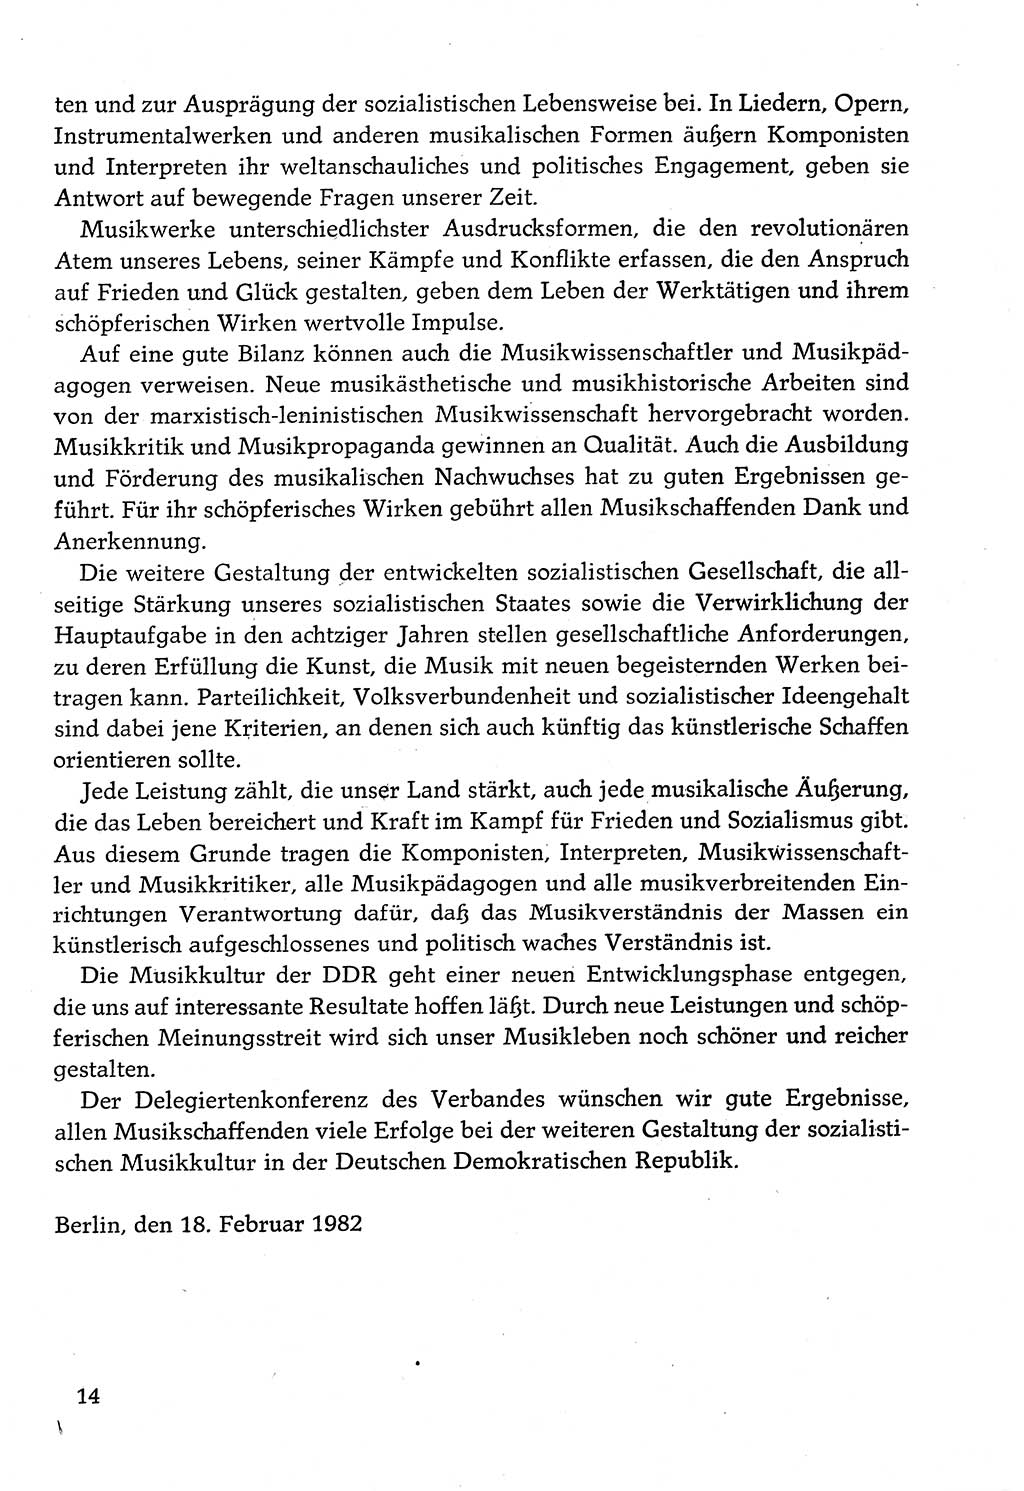 Dokumente der Sozialistischen Einheitspartei Deutschlands (SED) [Deutsche Demokratische Republik (DDR)] 1982-1983, Seite 14 (Dok. SED DDR 1982-1983, S. 14)